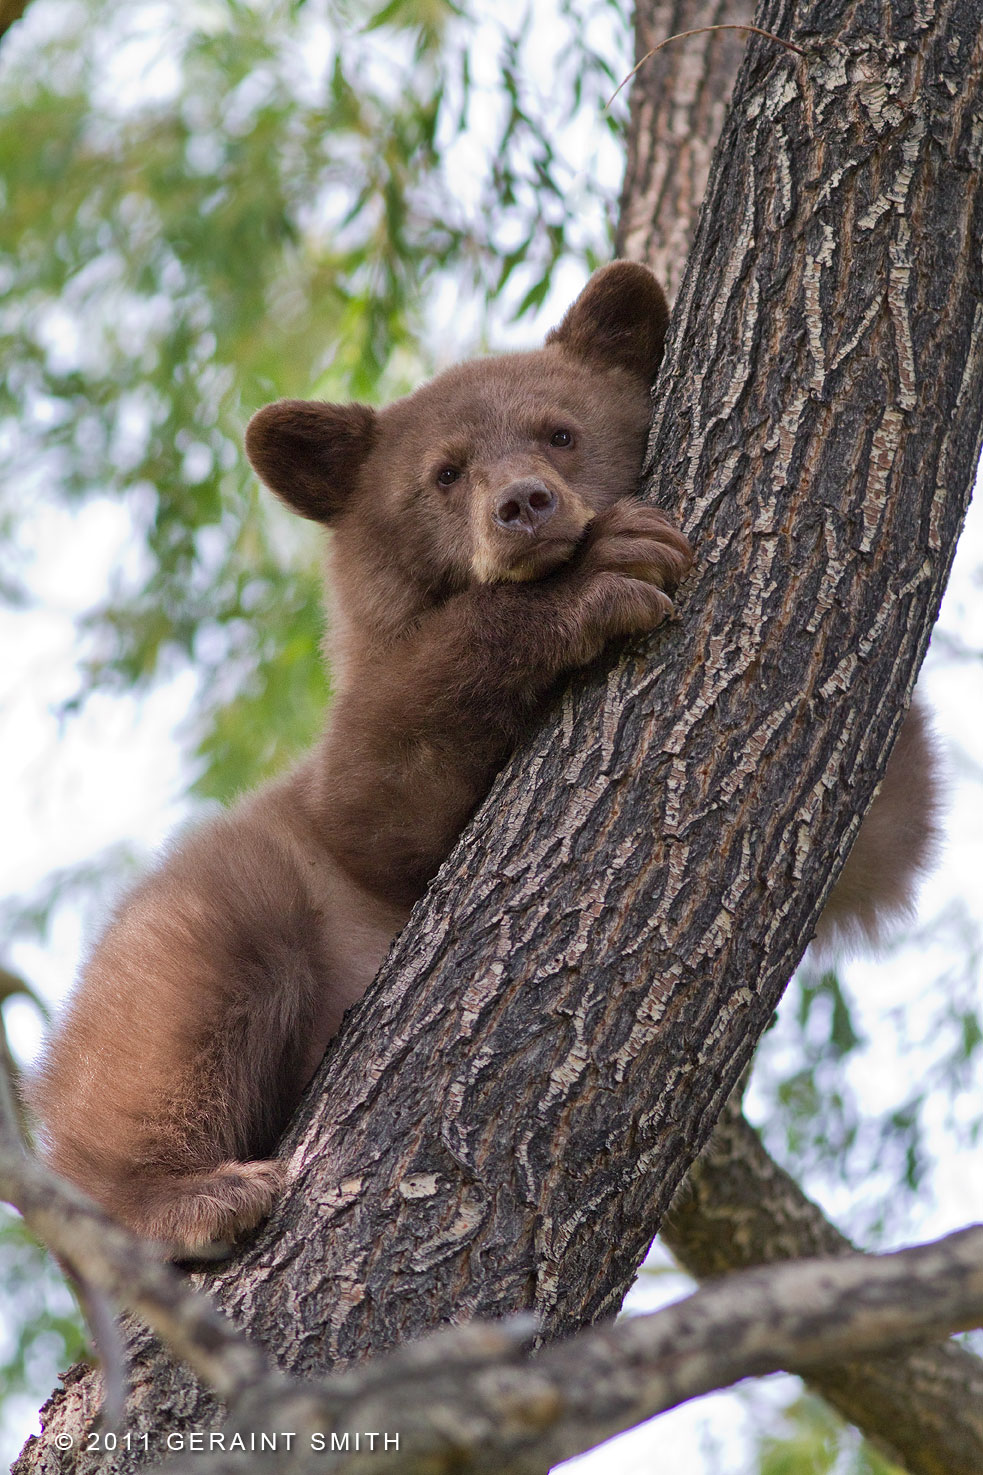 Bear Cub (no mama bear in sight, we kept checking) ... this image really moves me!